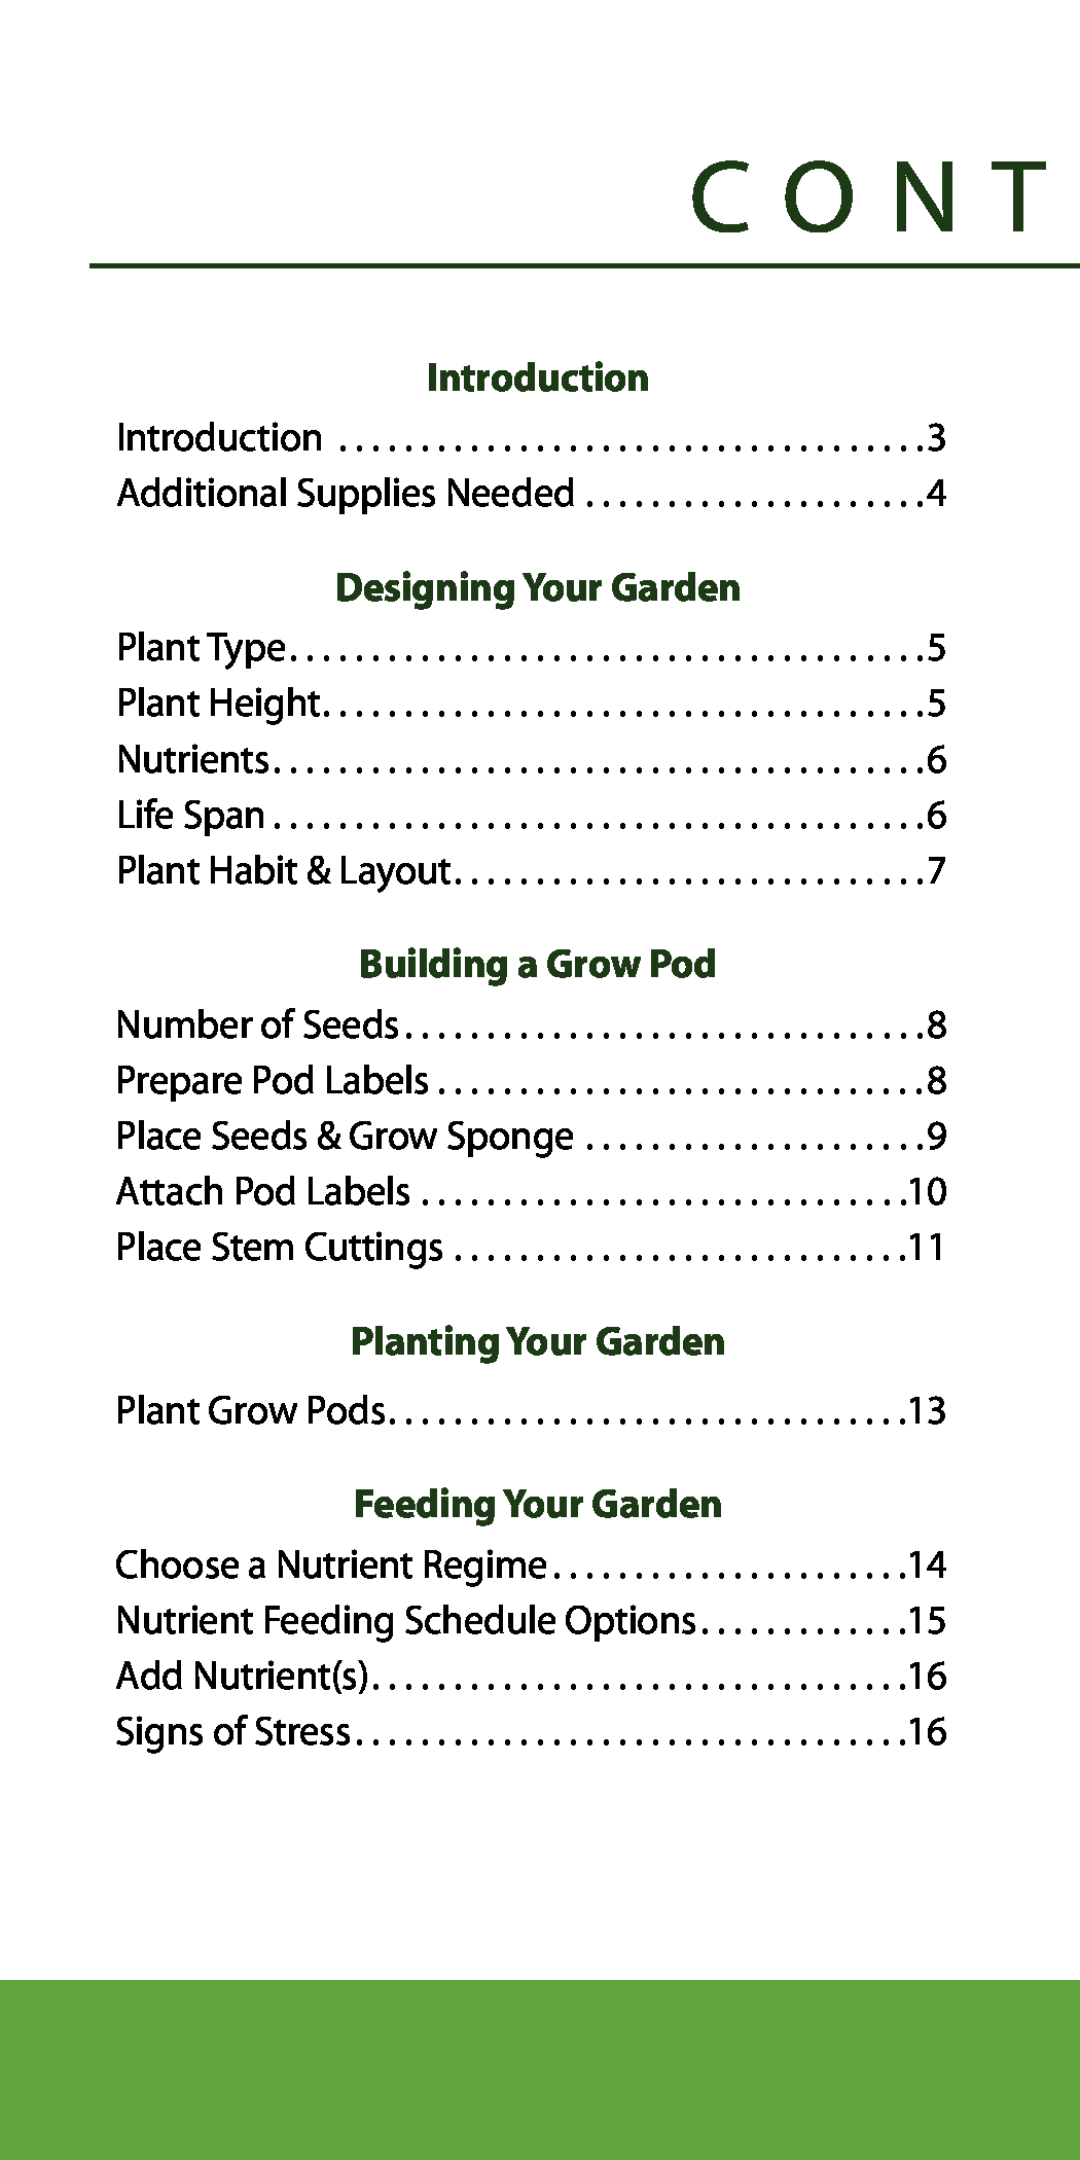 AeroGarden 7-Pod, 1-Season manual C O N T, Planting Your Garden, Feeding Your Garden, Introduction 